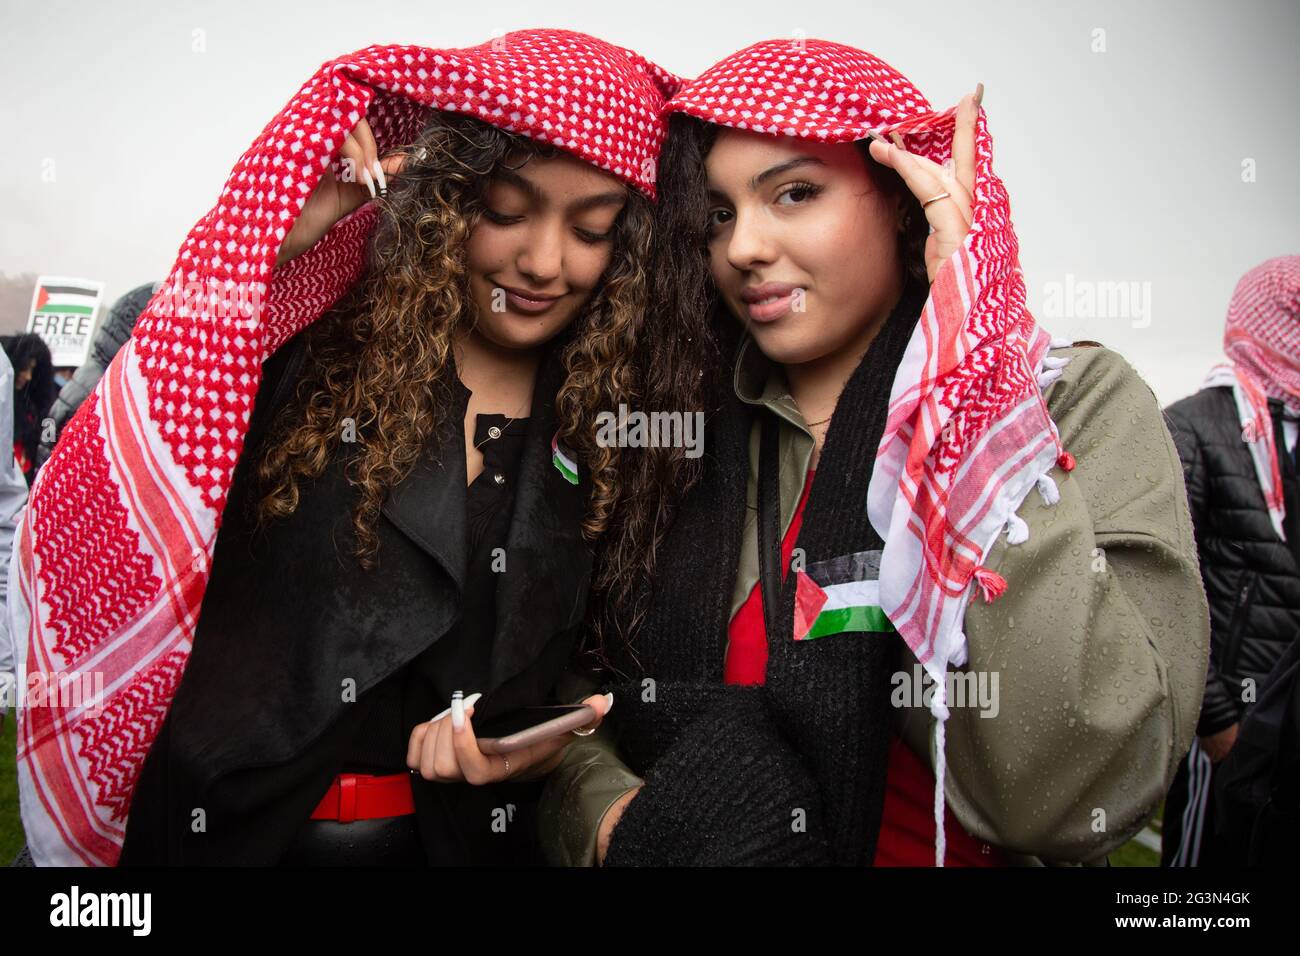 Deux jeunes femmes se protégeant de la pluie avec un keffiyeh à la manifestation Free Palestine, Londres, 22.5.2021 Banque D'Images